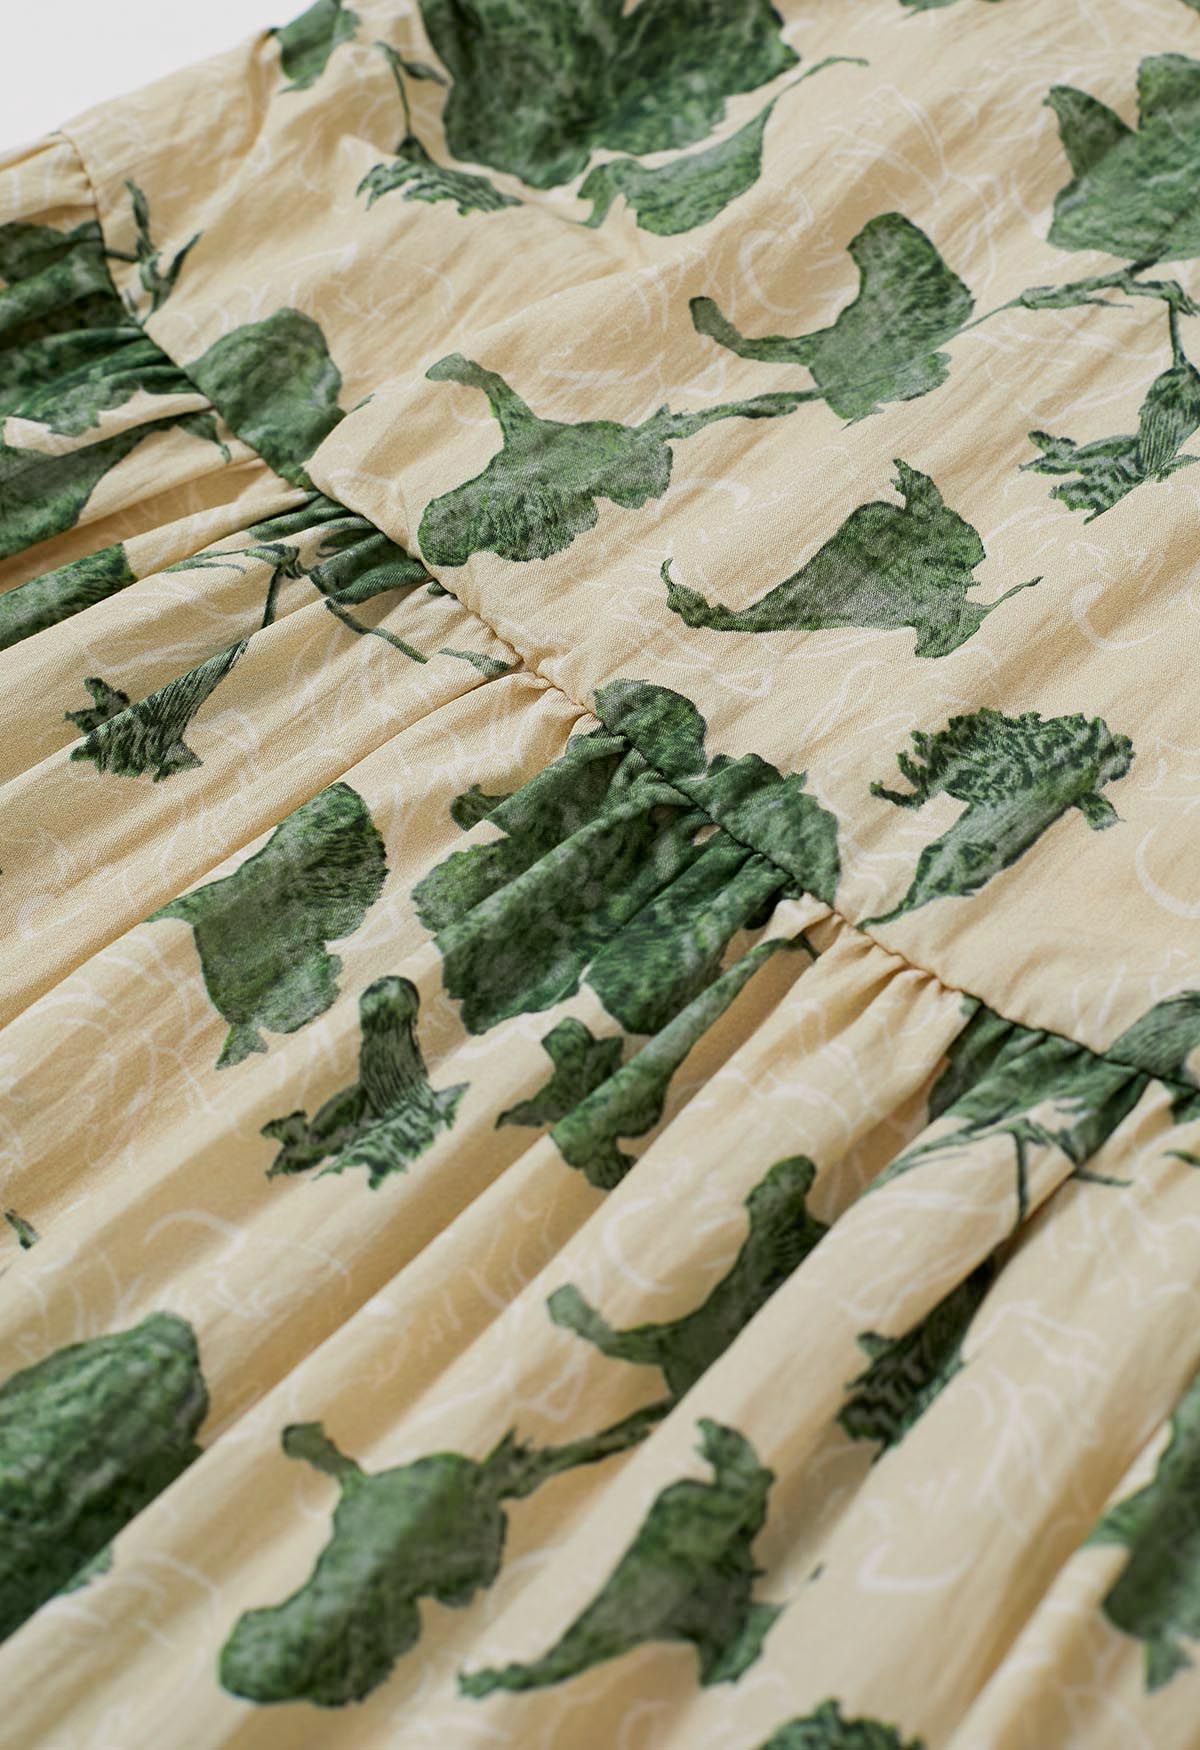 Robe longue caraco à imprimé floral en vert